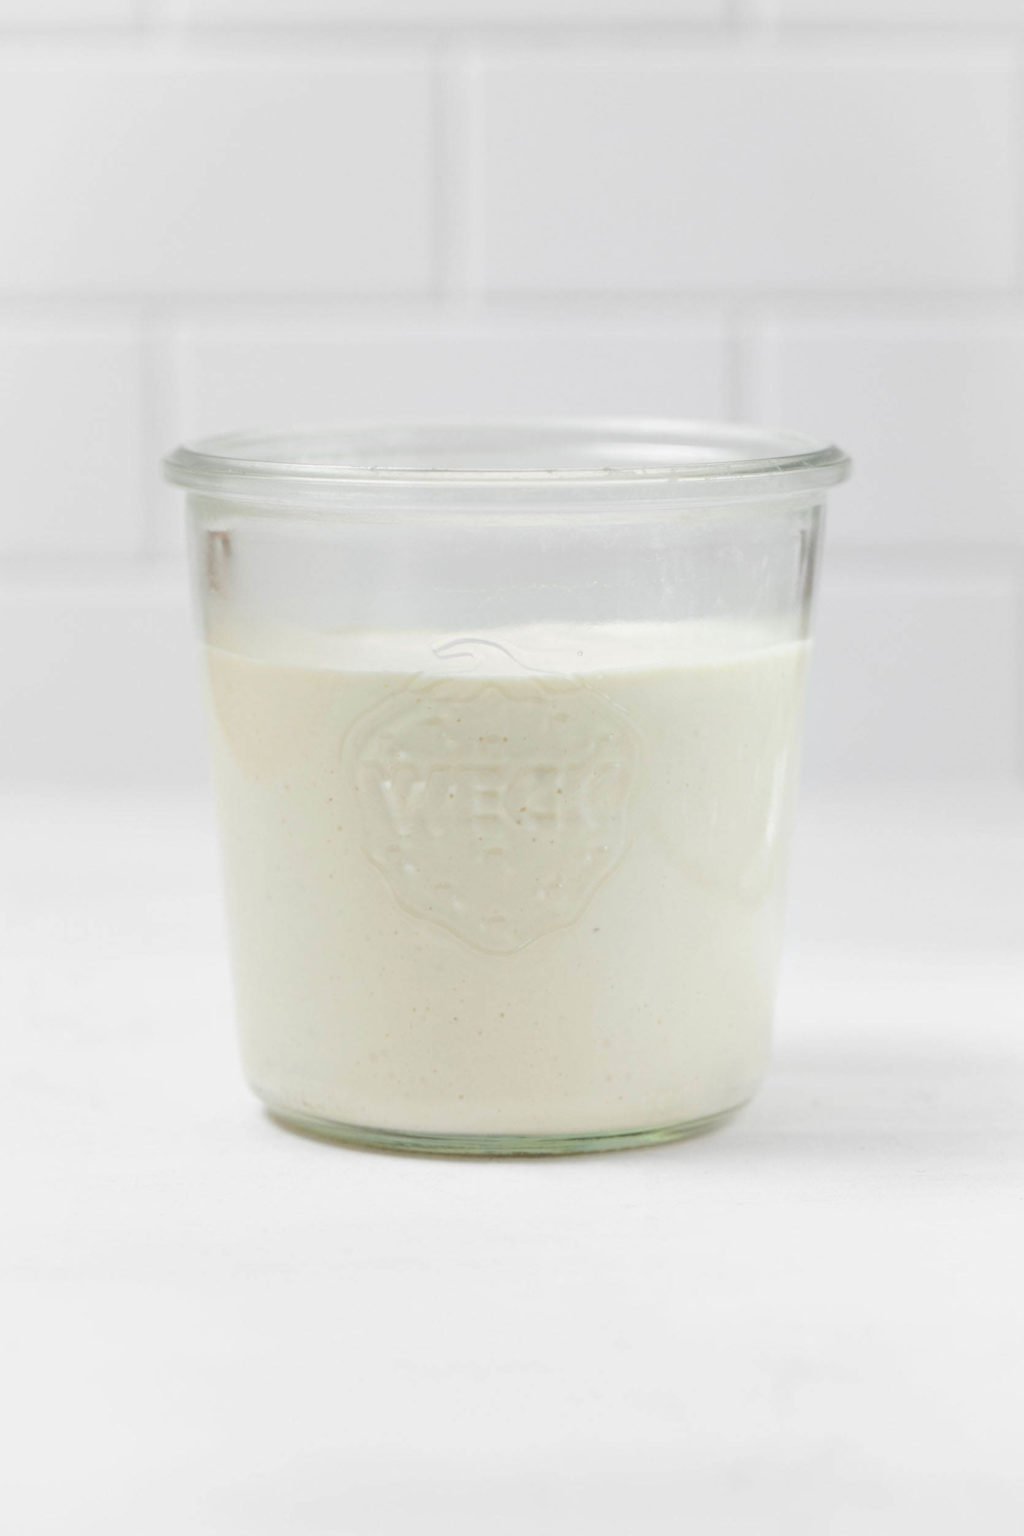 Un frasco de vidrio contiene crema agria vegana blanca y cremosa.  Se apoya sobre una superficie blanca.